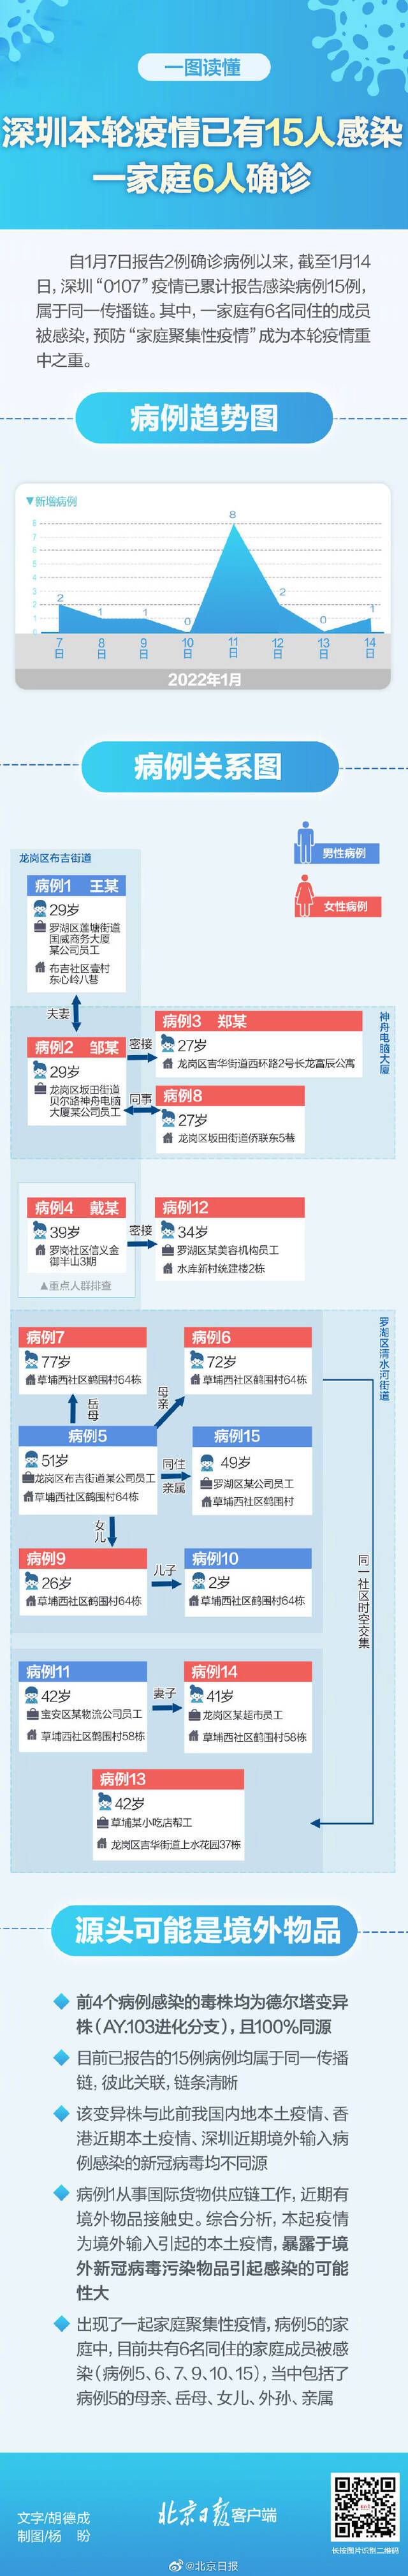 深圳本轮疫情已有15人感染 一家6人确诊